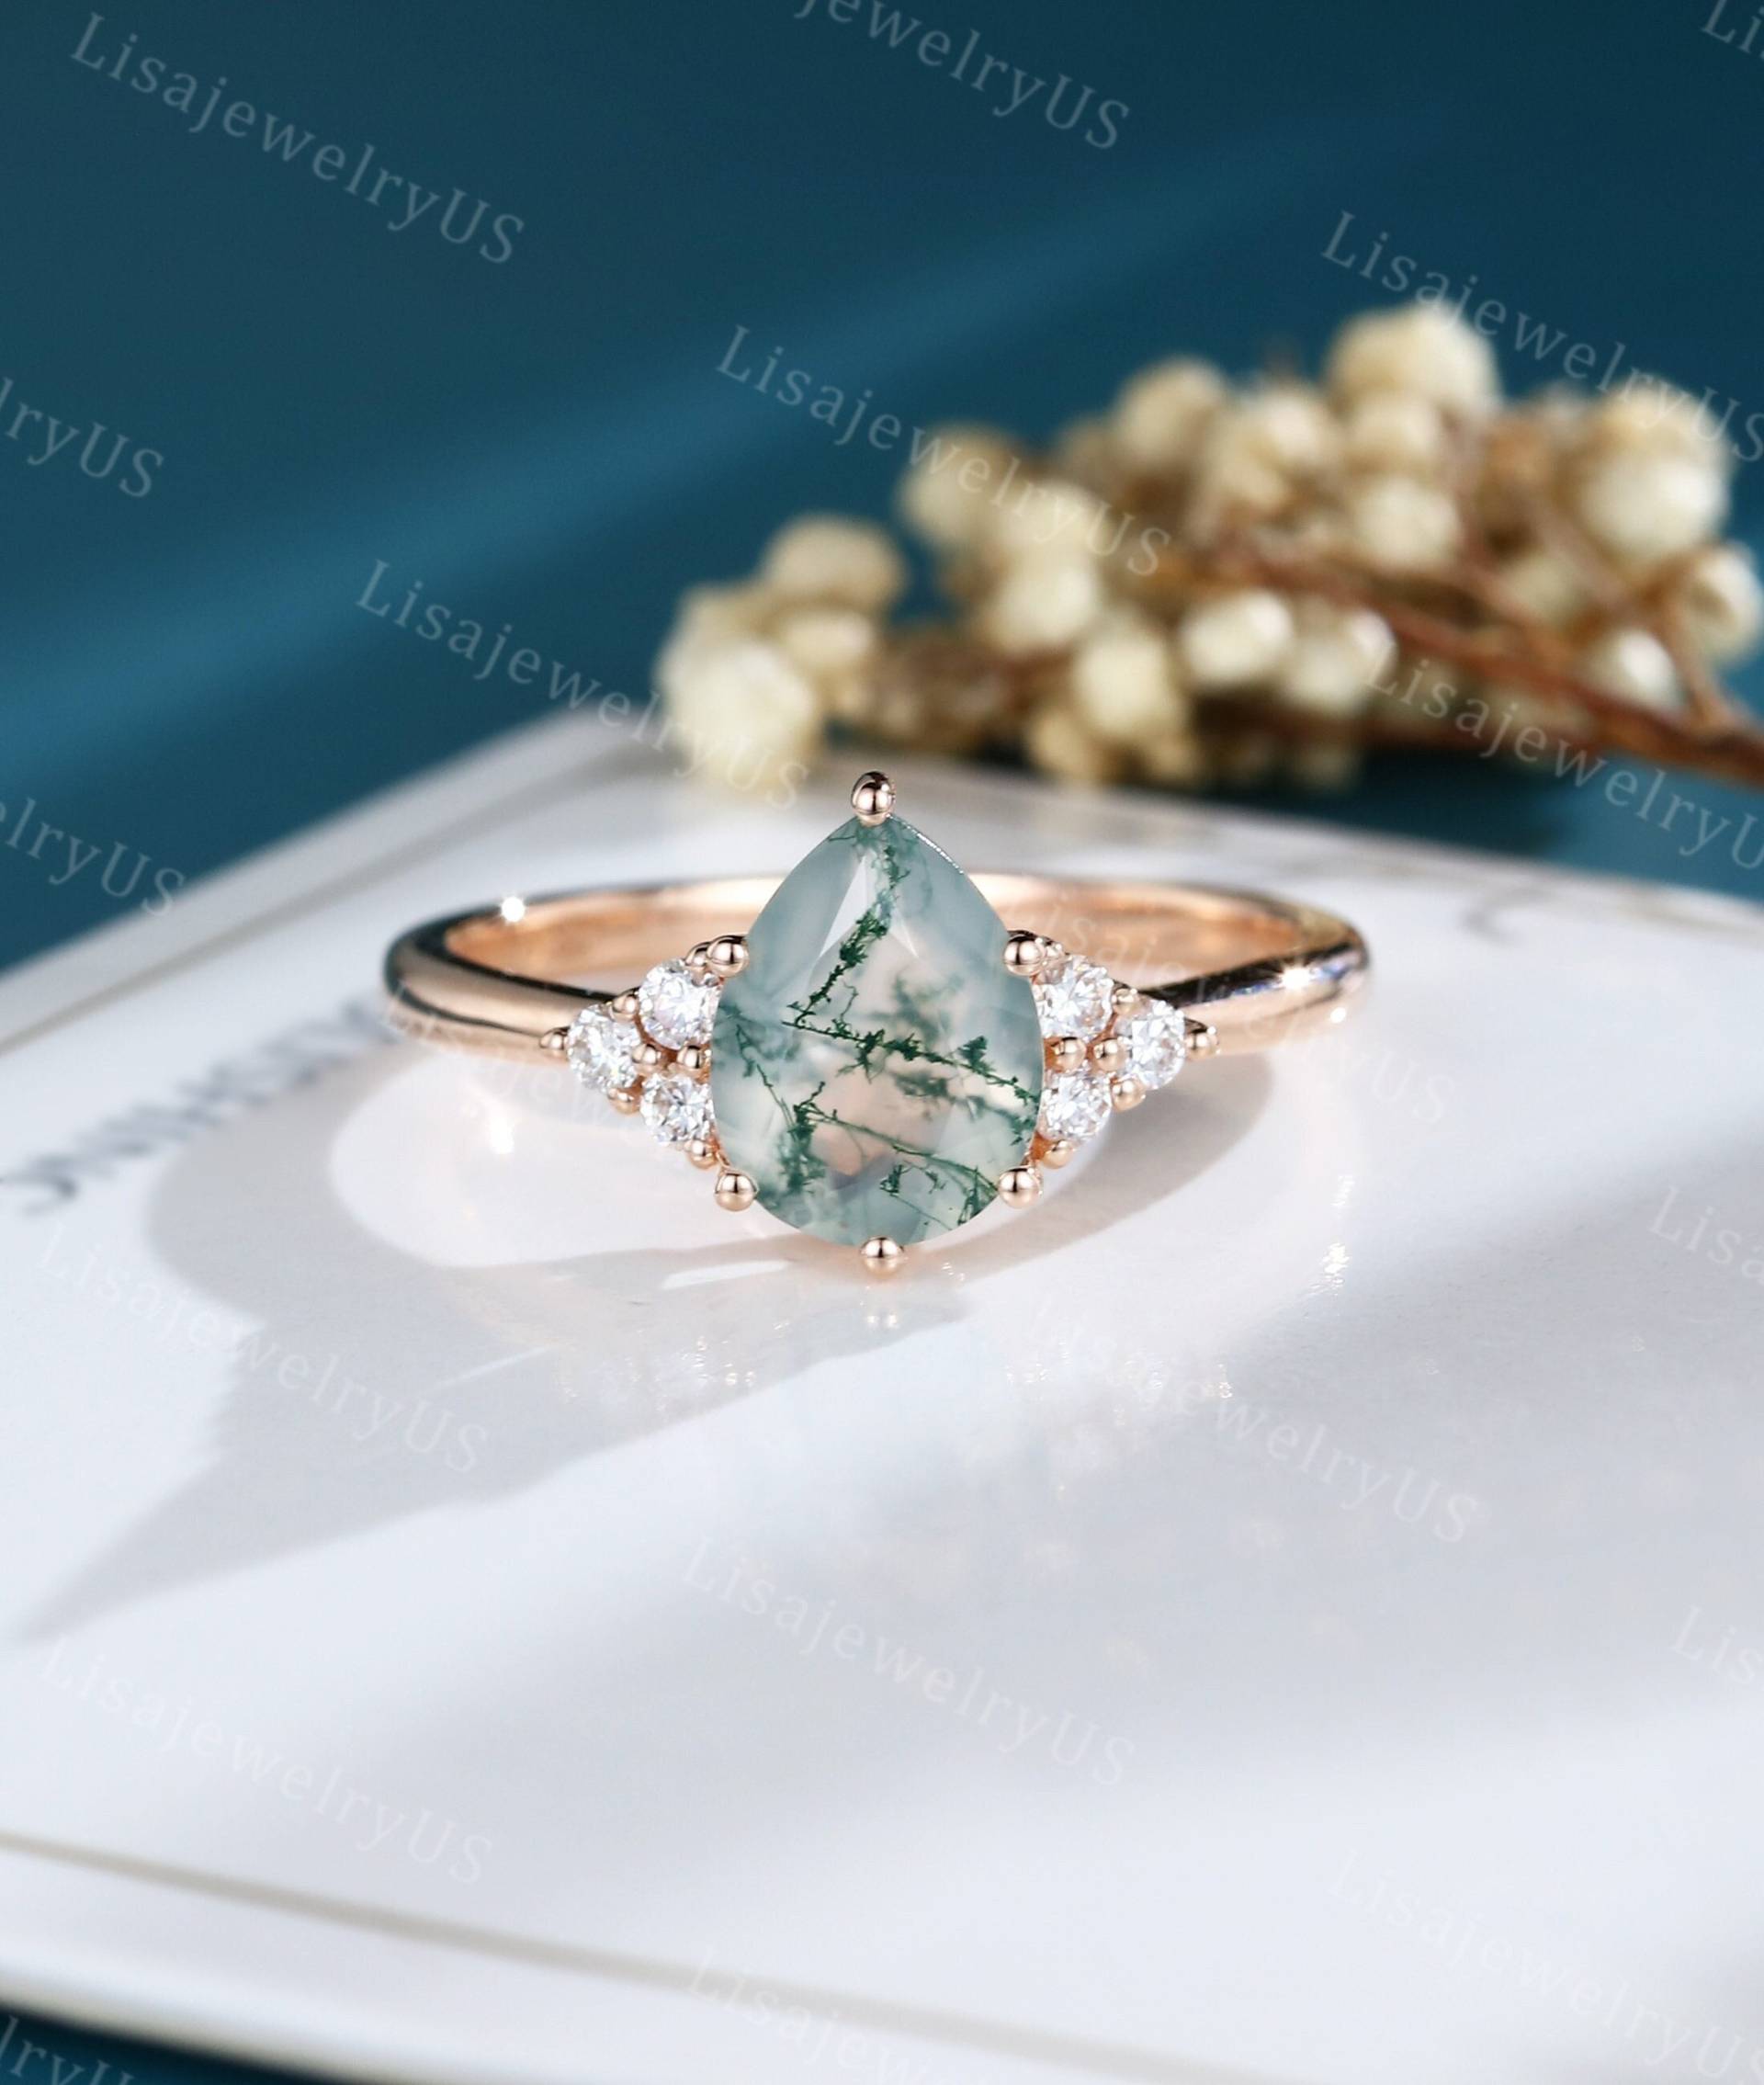 Birnenförmiger Moosachat Verlobungsring Massiver Roségold Vintage Art Deco Einzigartiger Zierlicher Cluster-Diamant-Braut-Verlobungsring von LisajewelryUS